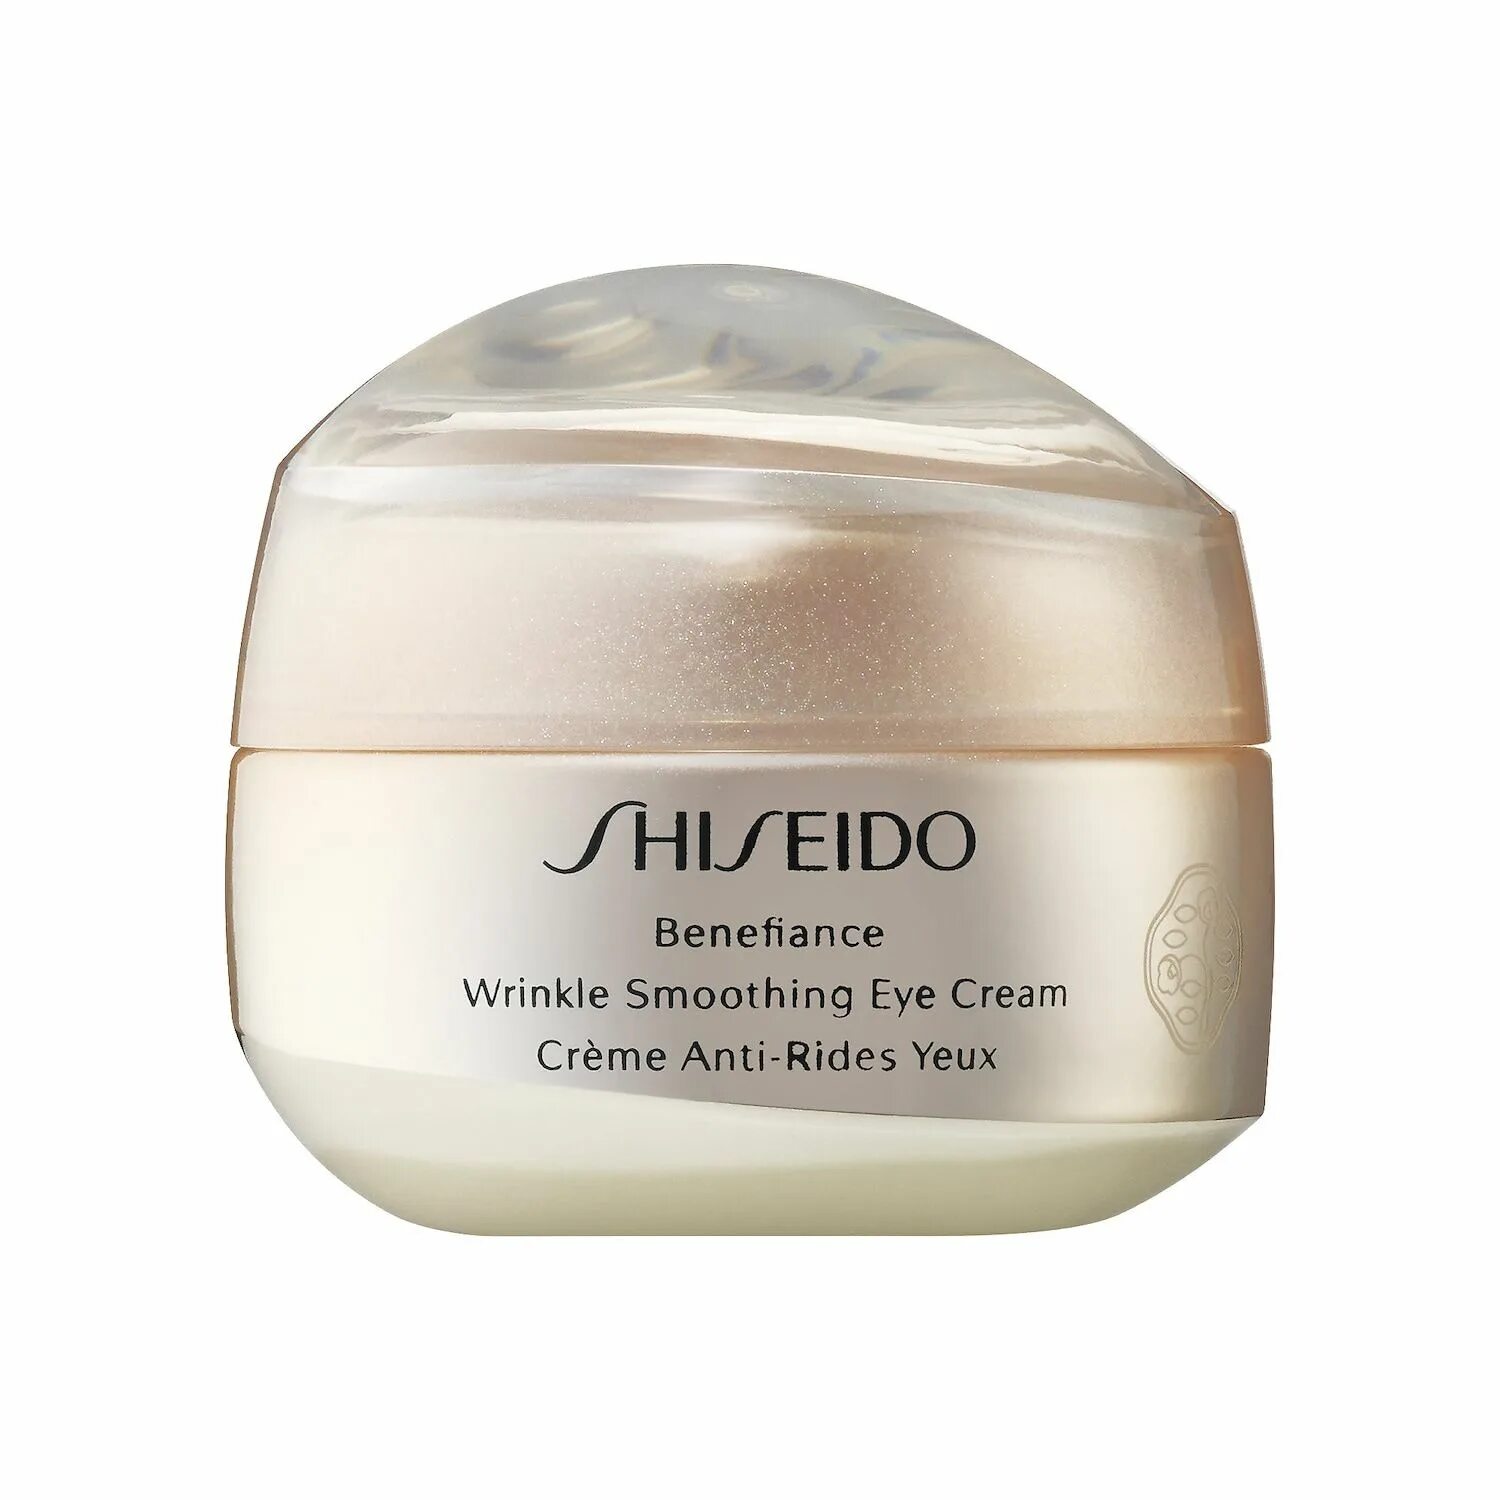 Shiseido Benefiance Eye Cream. Shiseido Benefiance Wrinkle Smoothing Eye Cream. Shiseido Wrinkle Smoothing Cream. Shiseido // крем Benefiance Wrinkle Smoothing Eye Cream 15ml. Крем shiseido benefiance